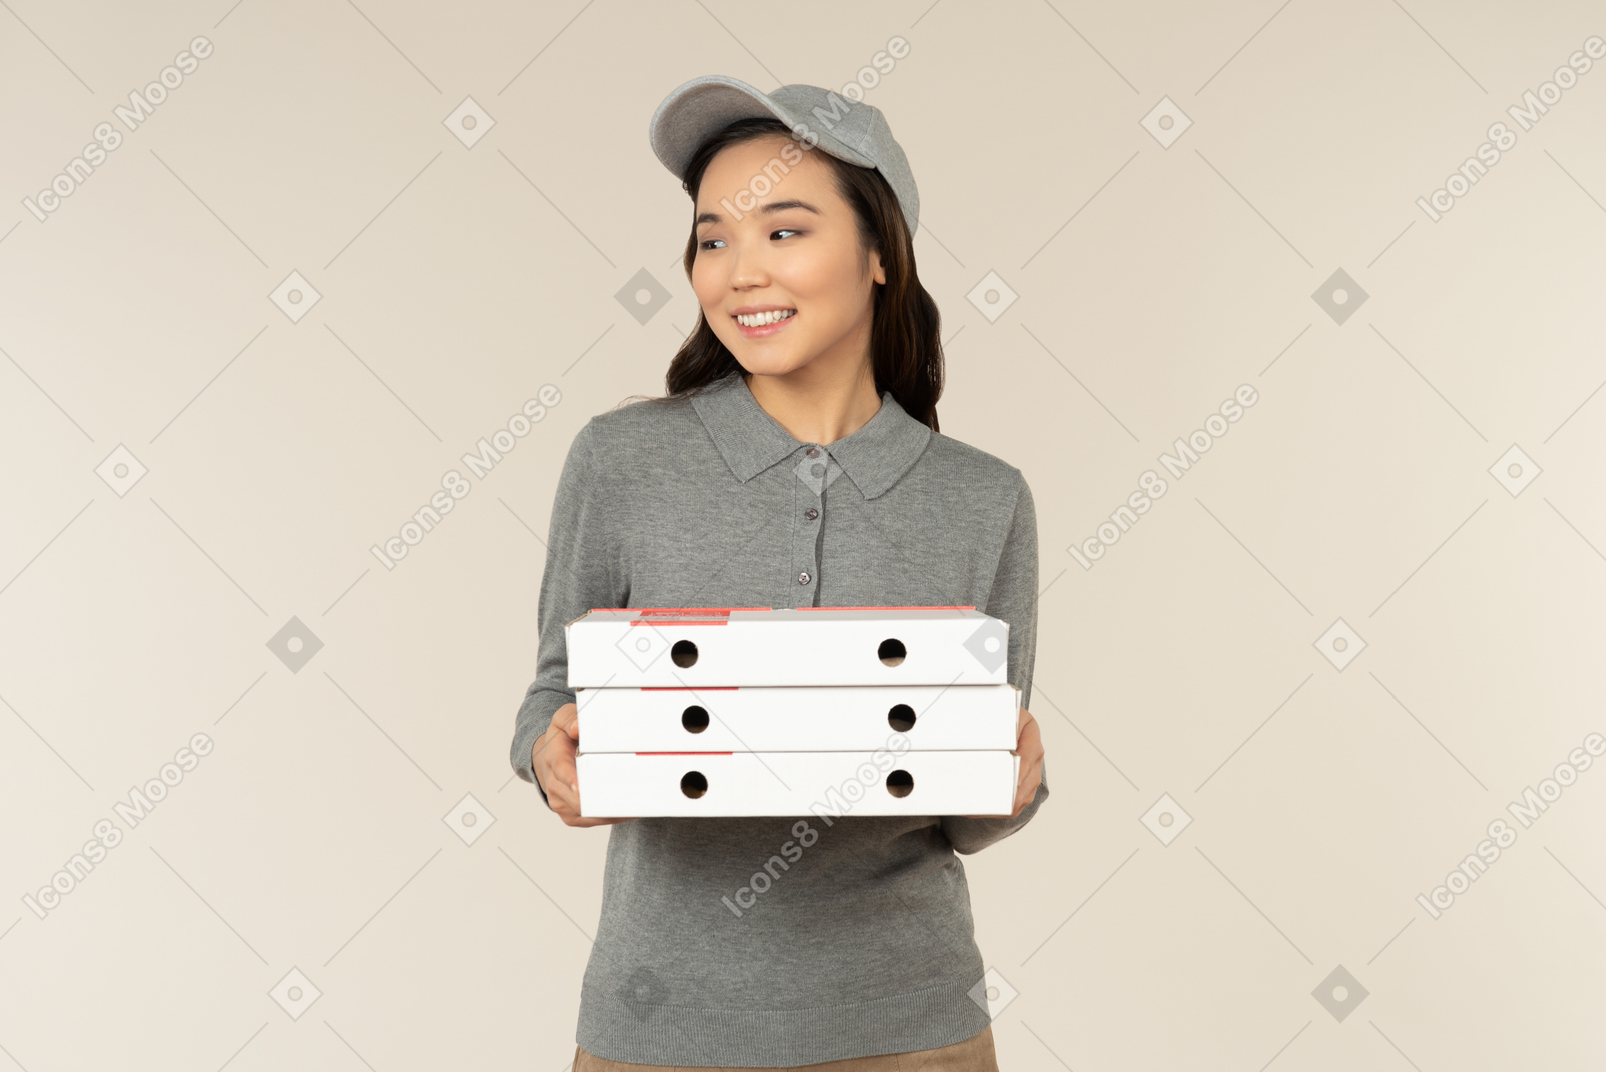 La pizza es la opción de comida perfecta